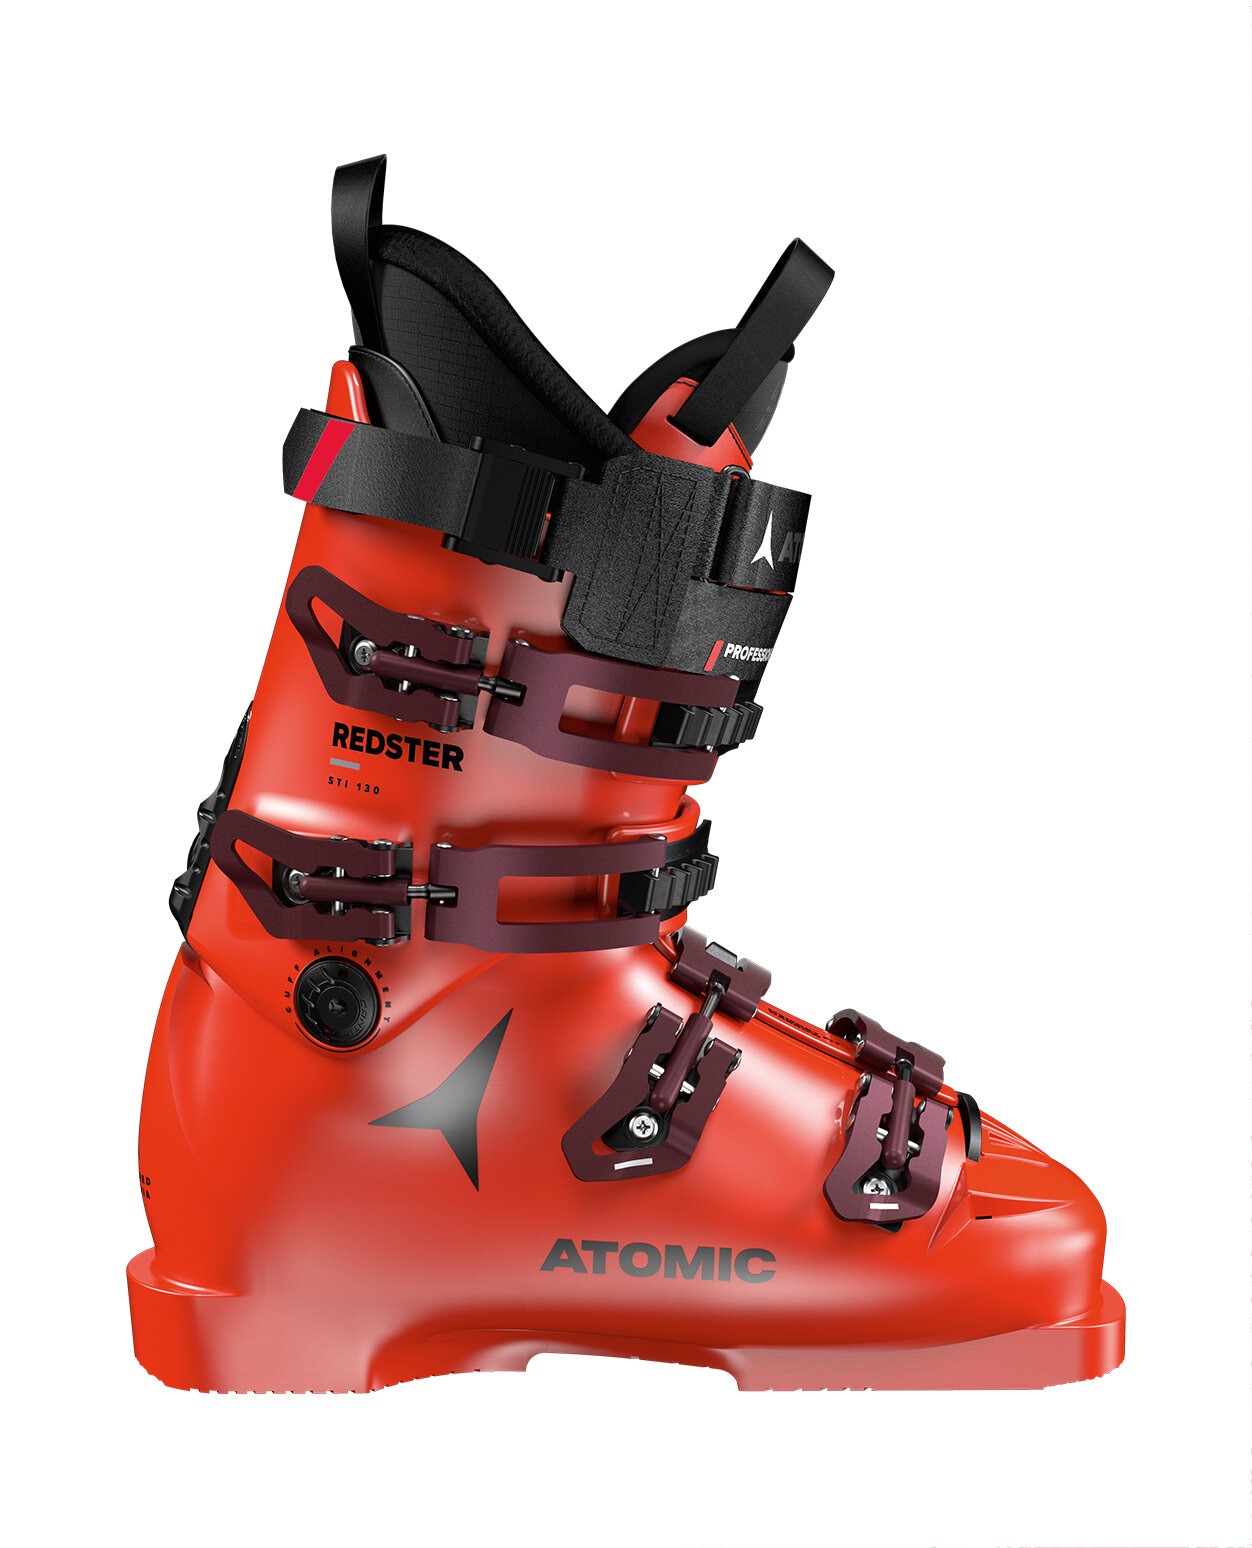 特価在庫あアトミック ATOMIC REDSTER XT163 スキー